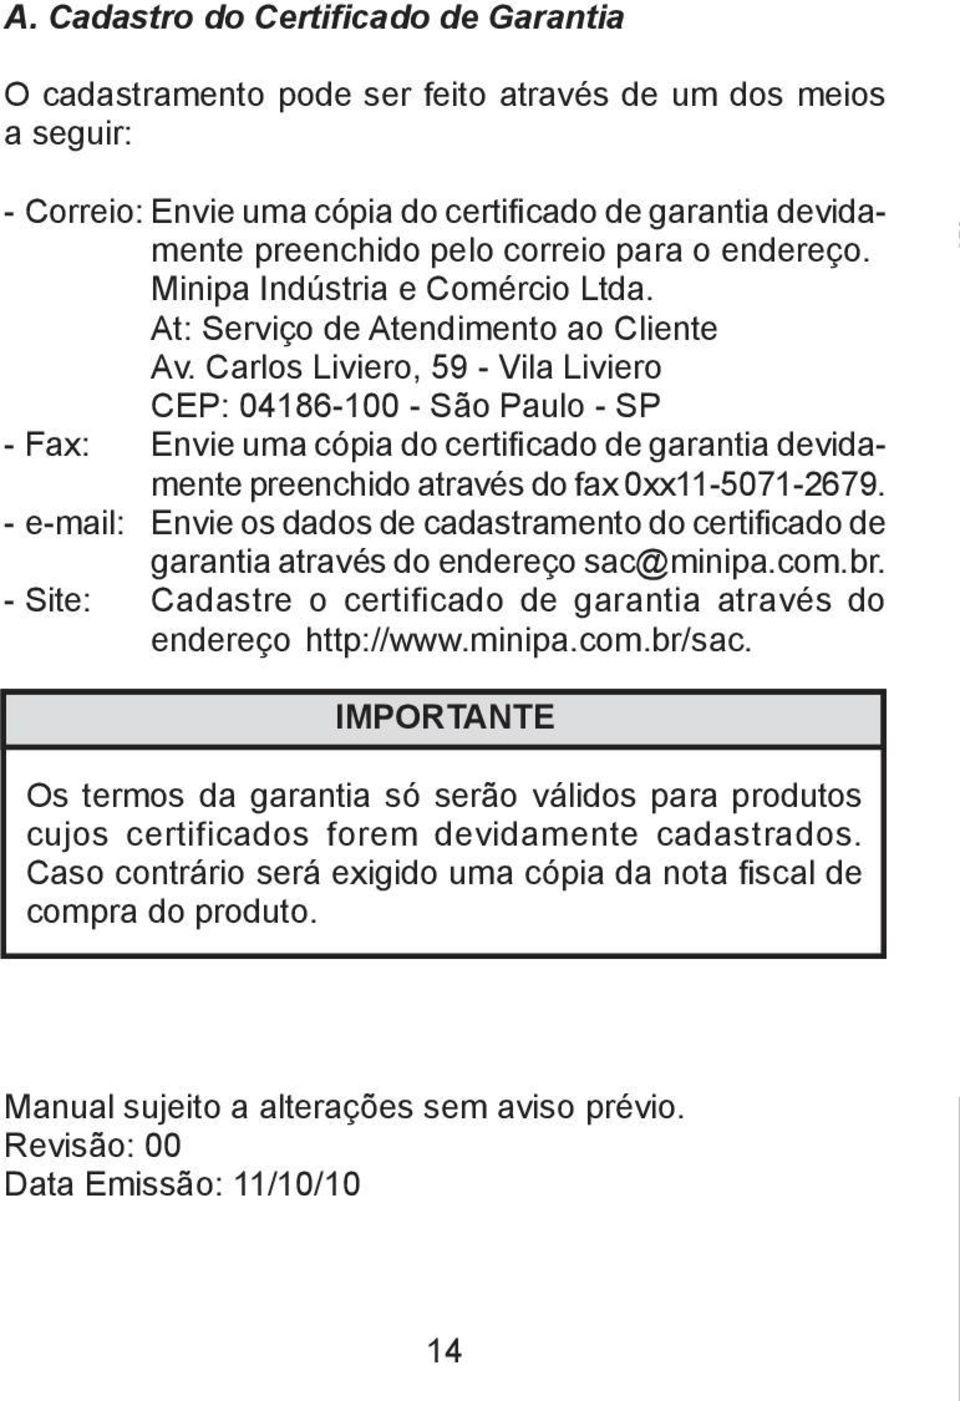 Carlos Liviero, 59 - Vila Liviero CEP: 04186-100 - São Paulo - SP - Fax: Envie uma cópia do certificado de garantia devidamente preenchido através do fax 0xx11-5071-2679.